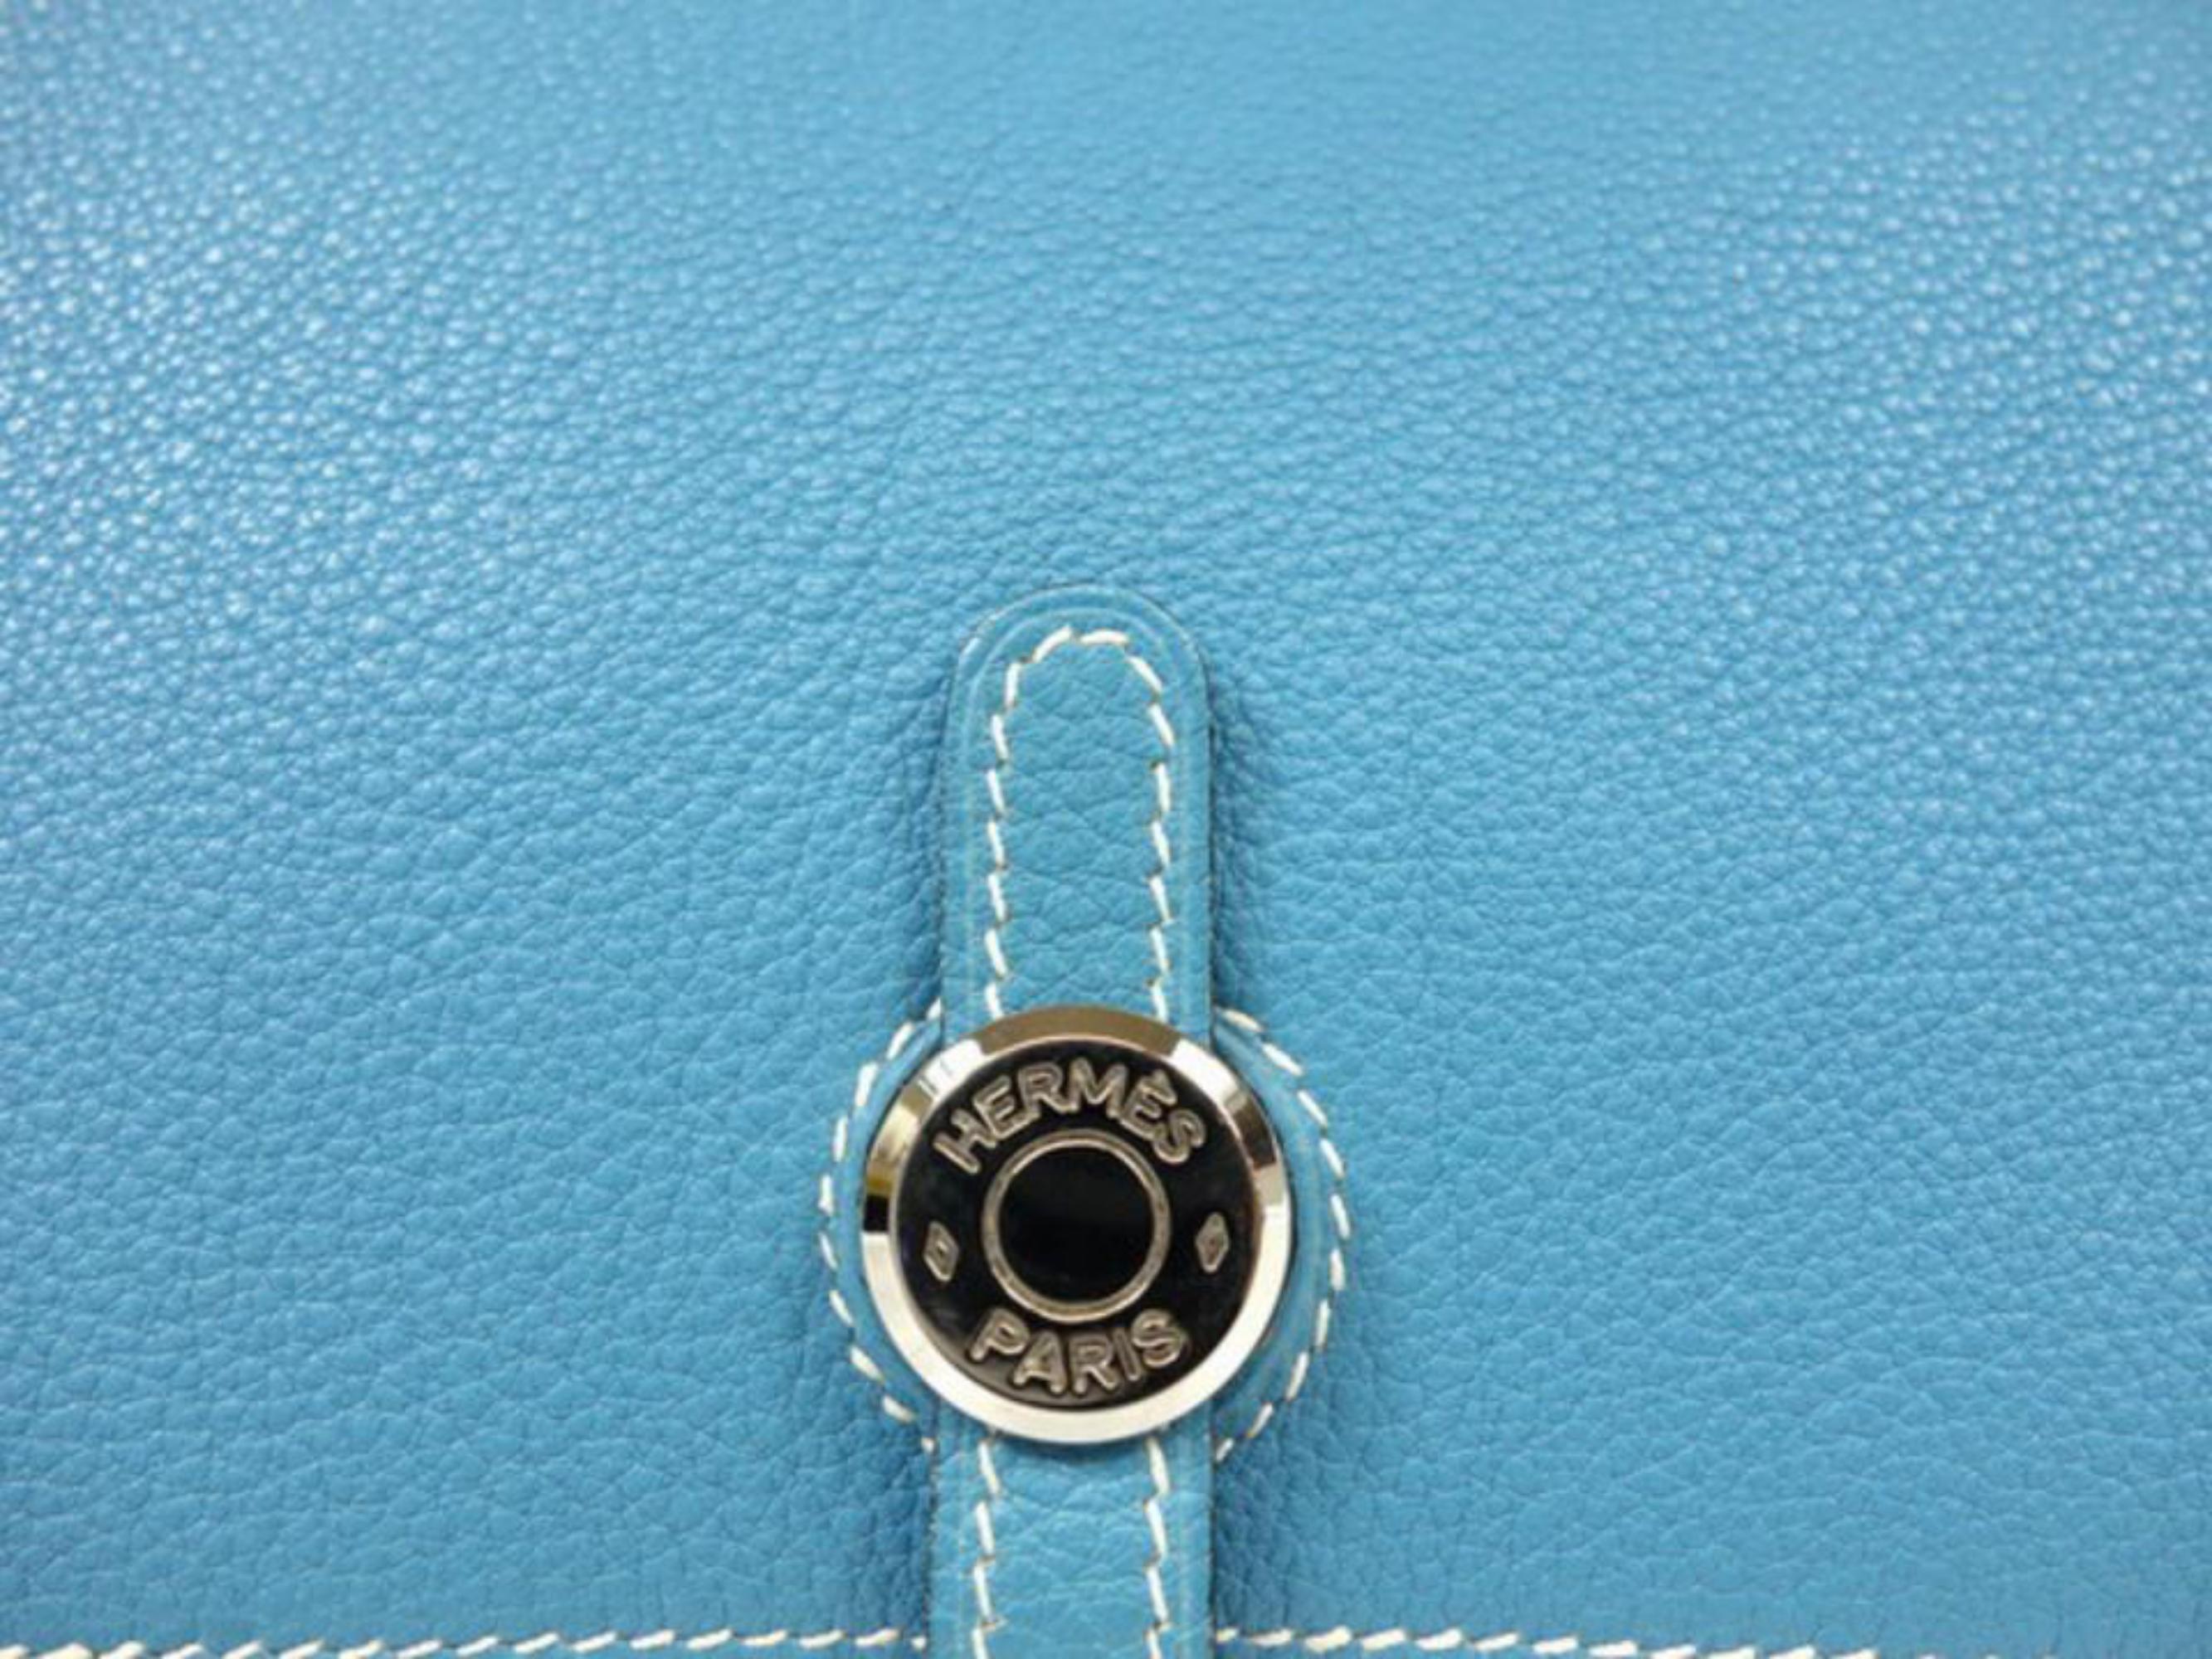 Women's Hermès Jean Dogon Fanny Pack Belt Waist Pouch 233789 Blue Leather Cross Body Bag For Sale